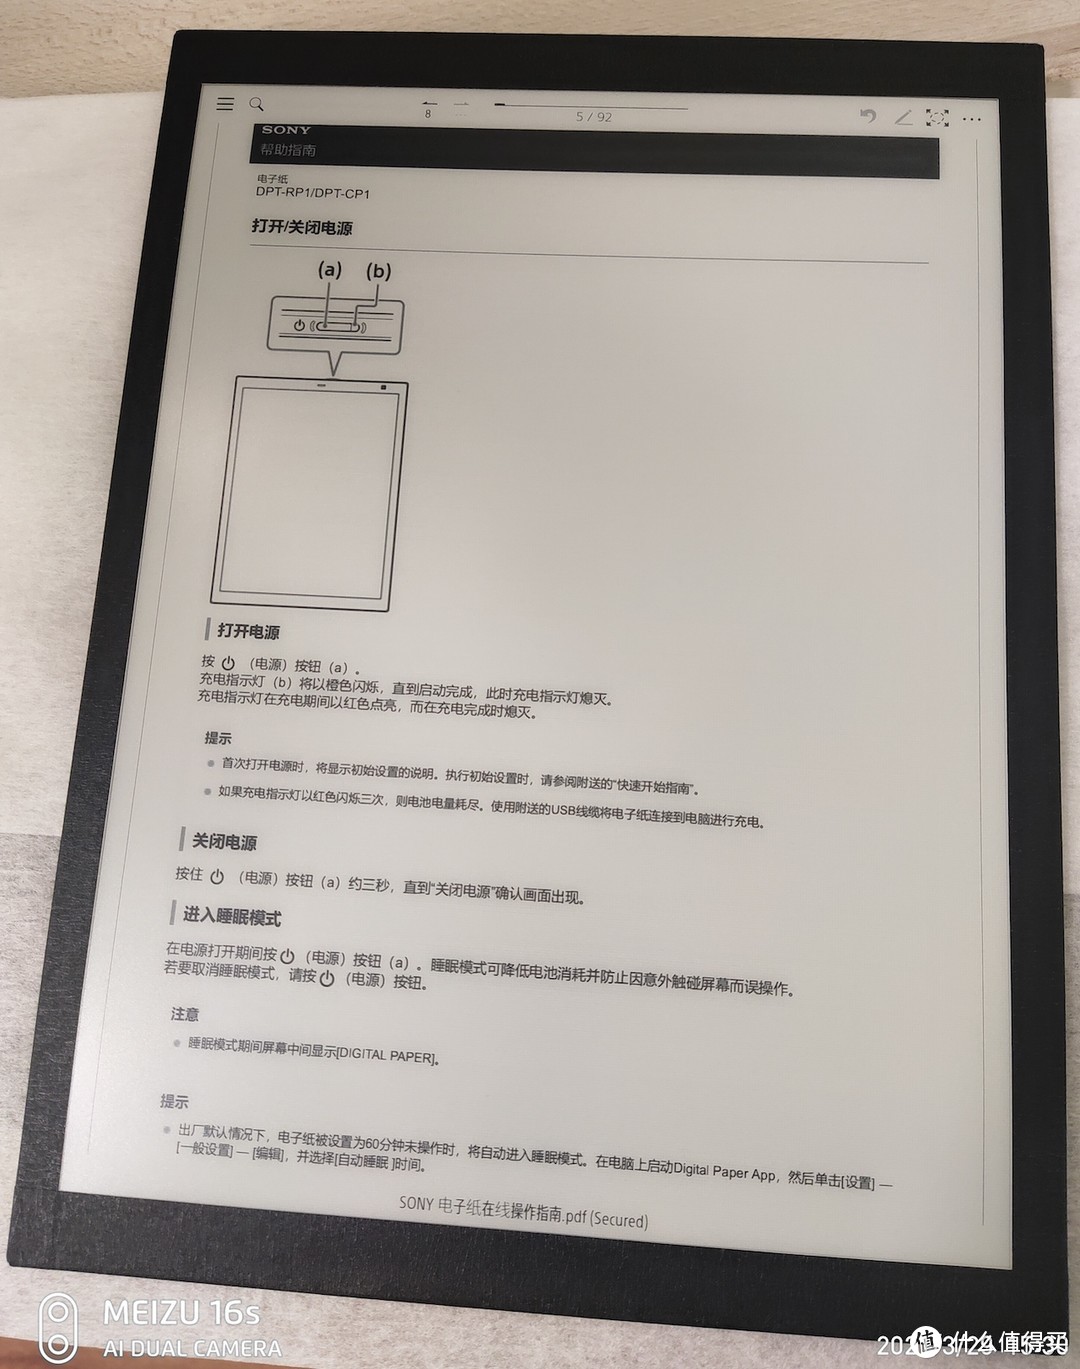 这显示的文档就是SONY官网下载的中文在线使用手册